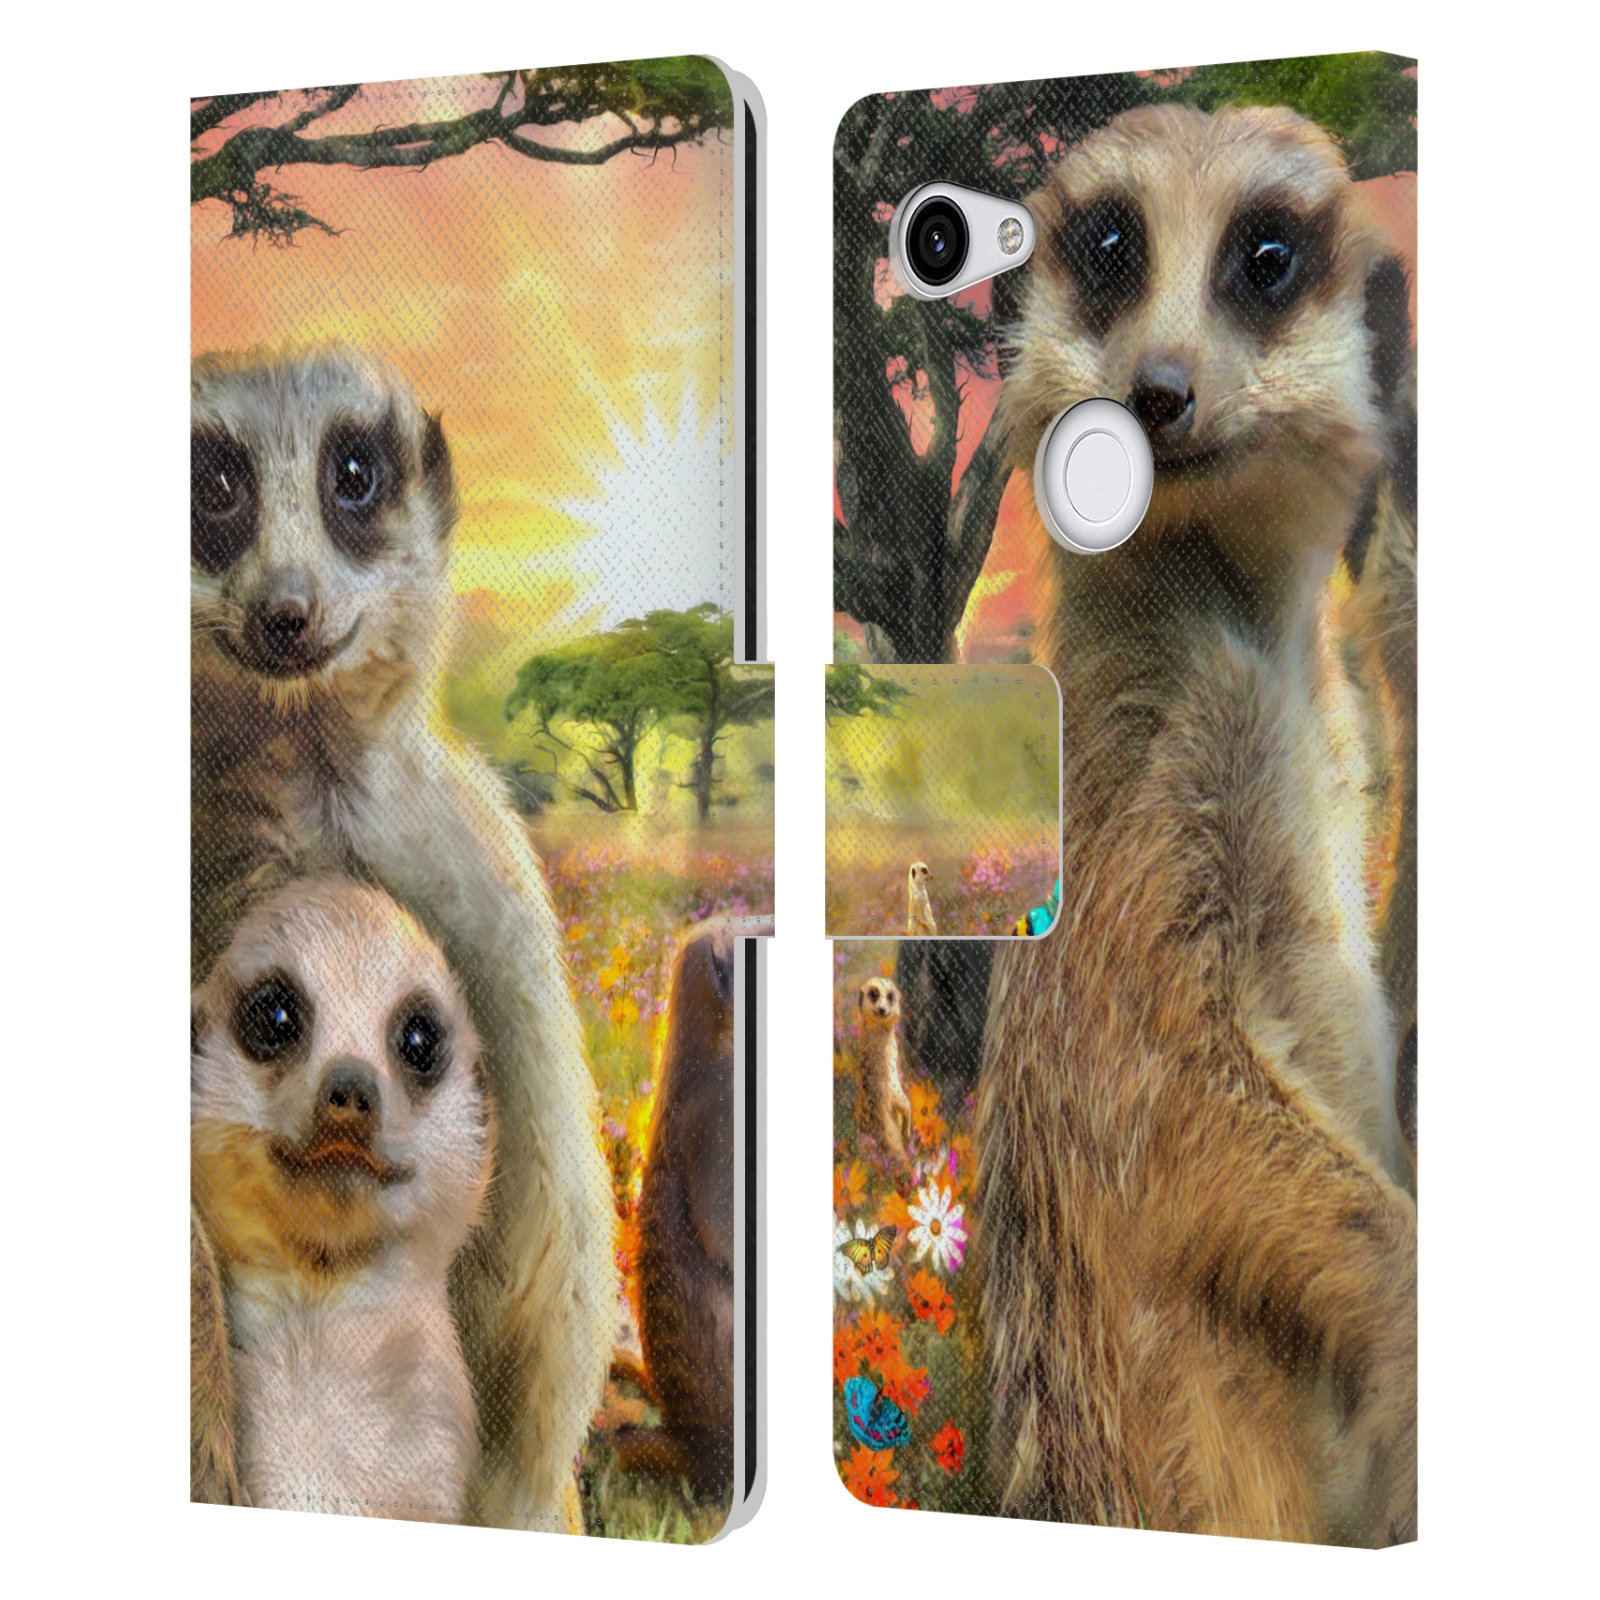 Pouzdro na mobil Google Pixel 3a XL - Head Case - malé surikaty